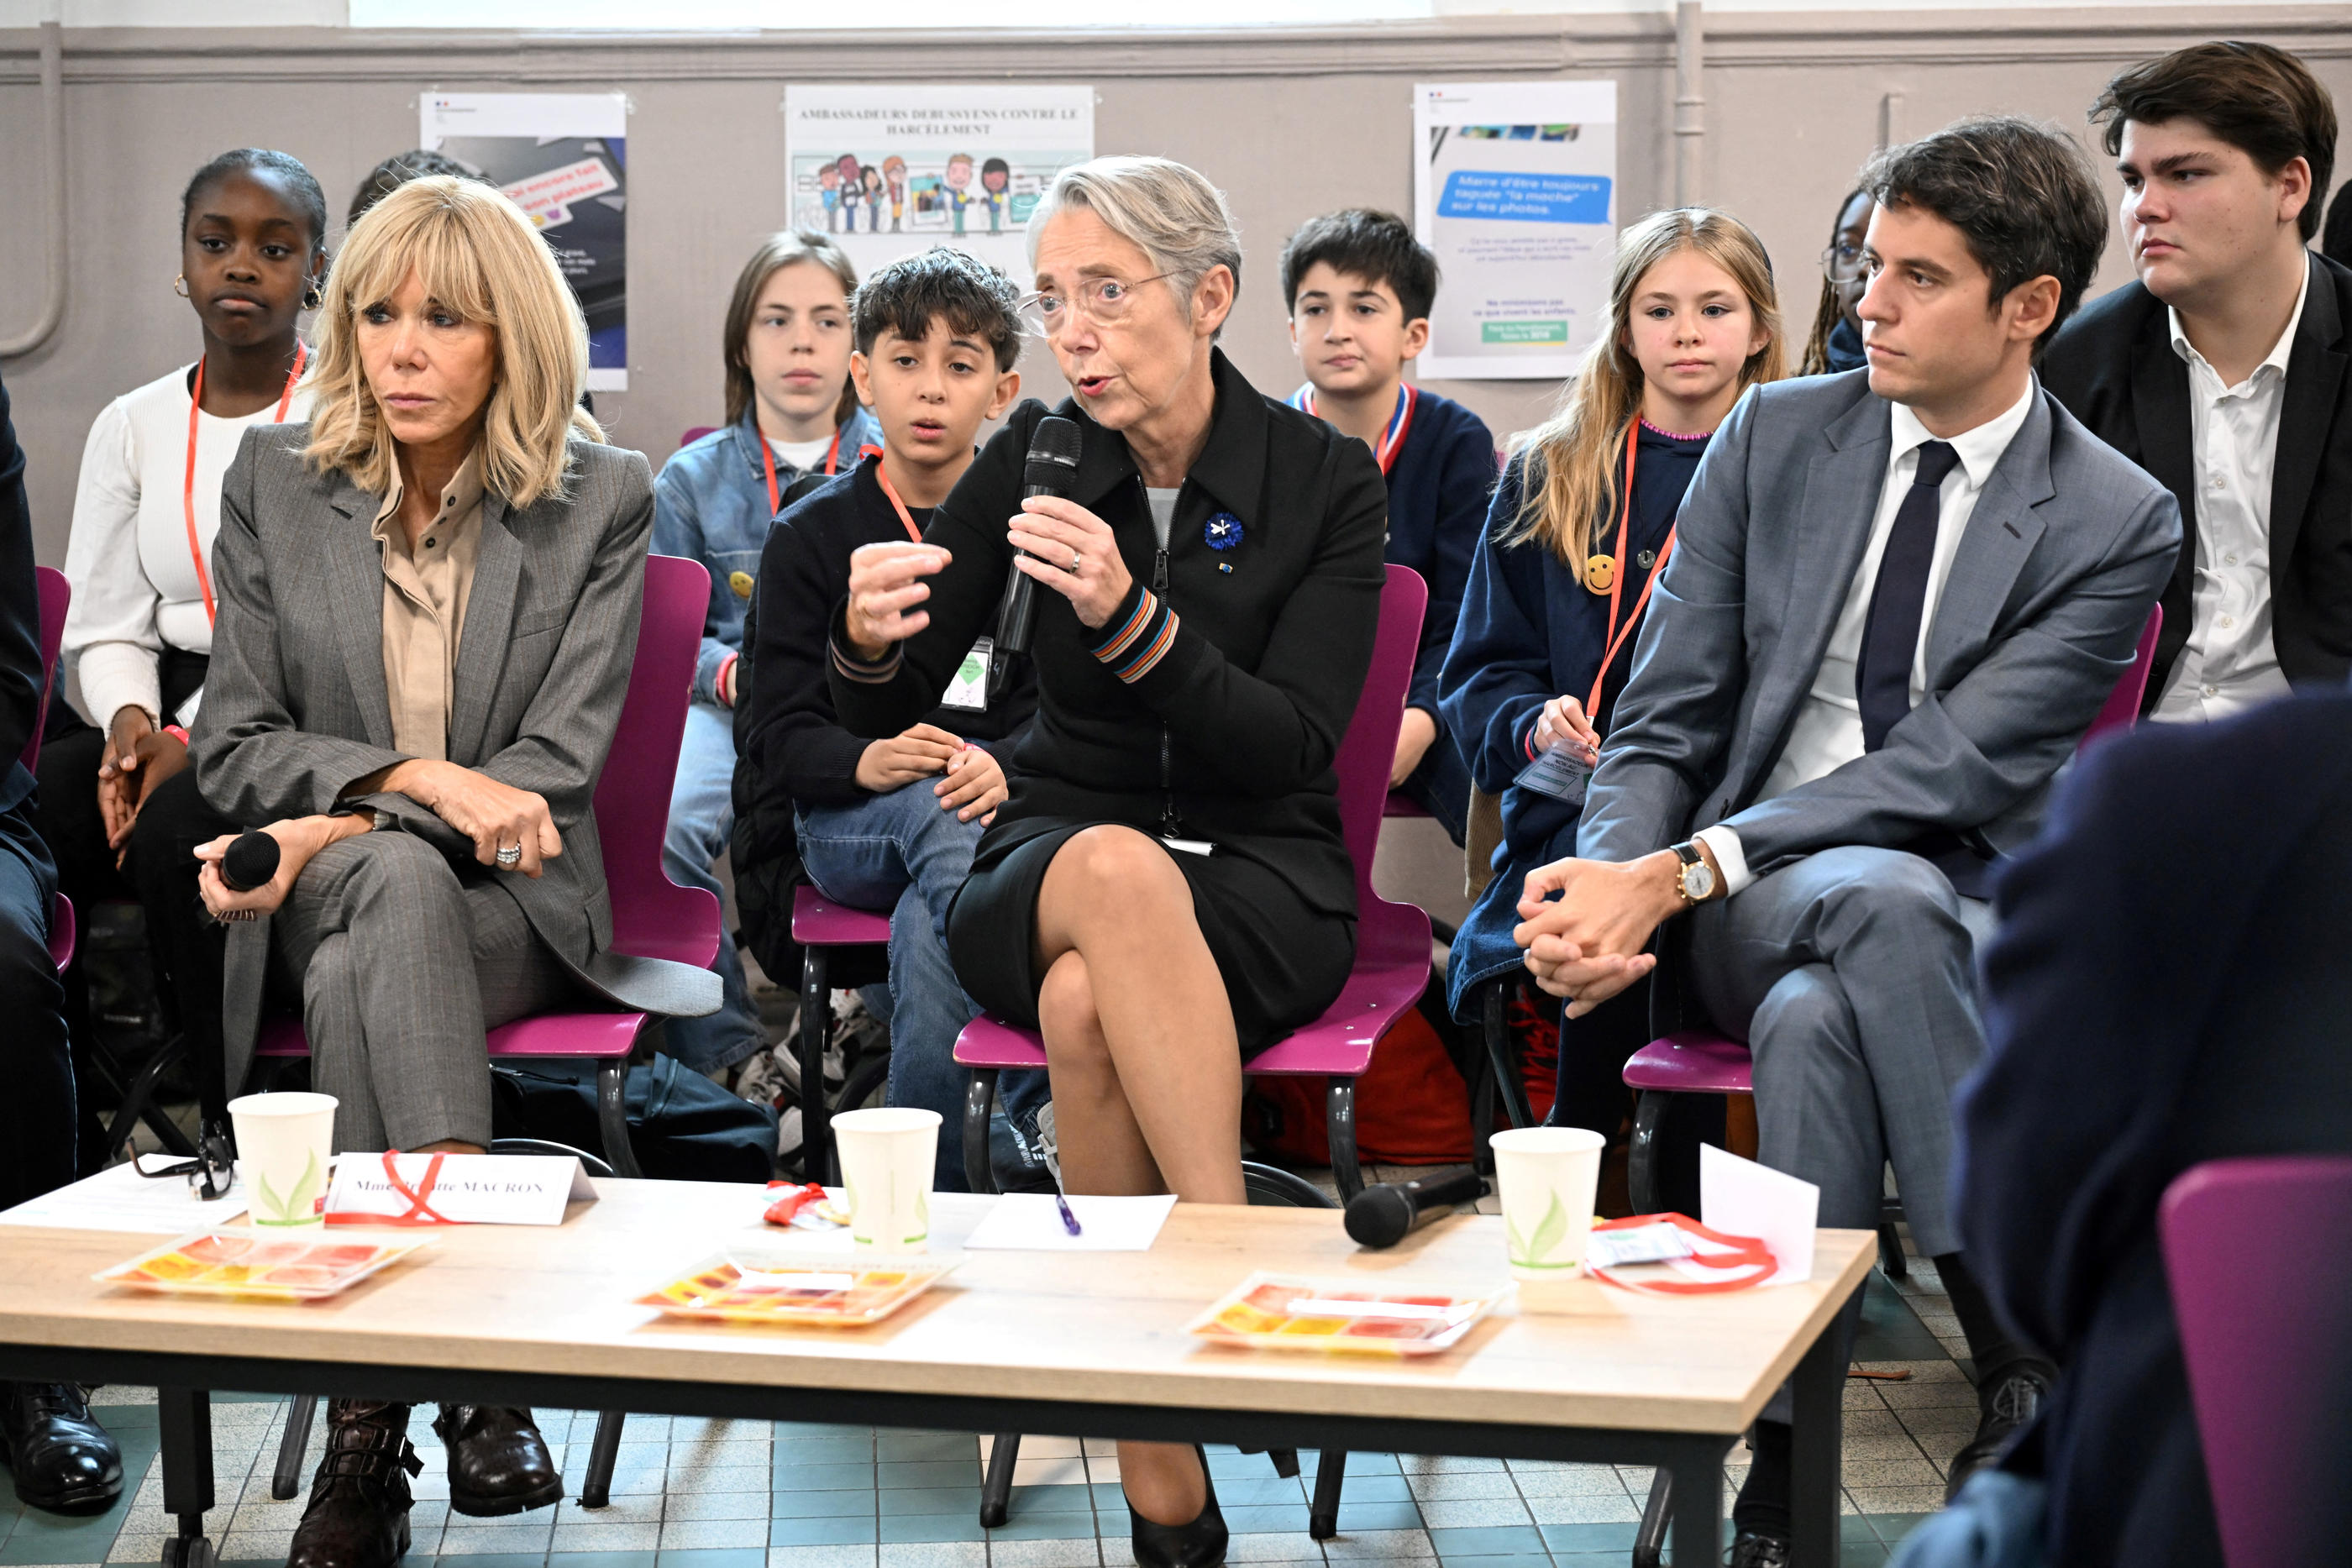 Élisabeth Borne, Gabriel Attal, ministre de l'Education et de la jeunesse, et Brigitte Macron, visitent un lycée parisien sur le thème du harcèlement scolaire à l'occasion de la journée nationale contre le harcèlement scolaire à Paris. BERTRAND GUAY/Pool via REUTERS